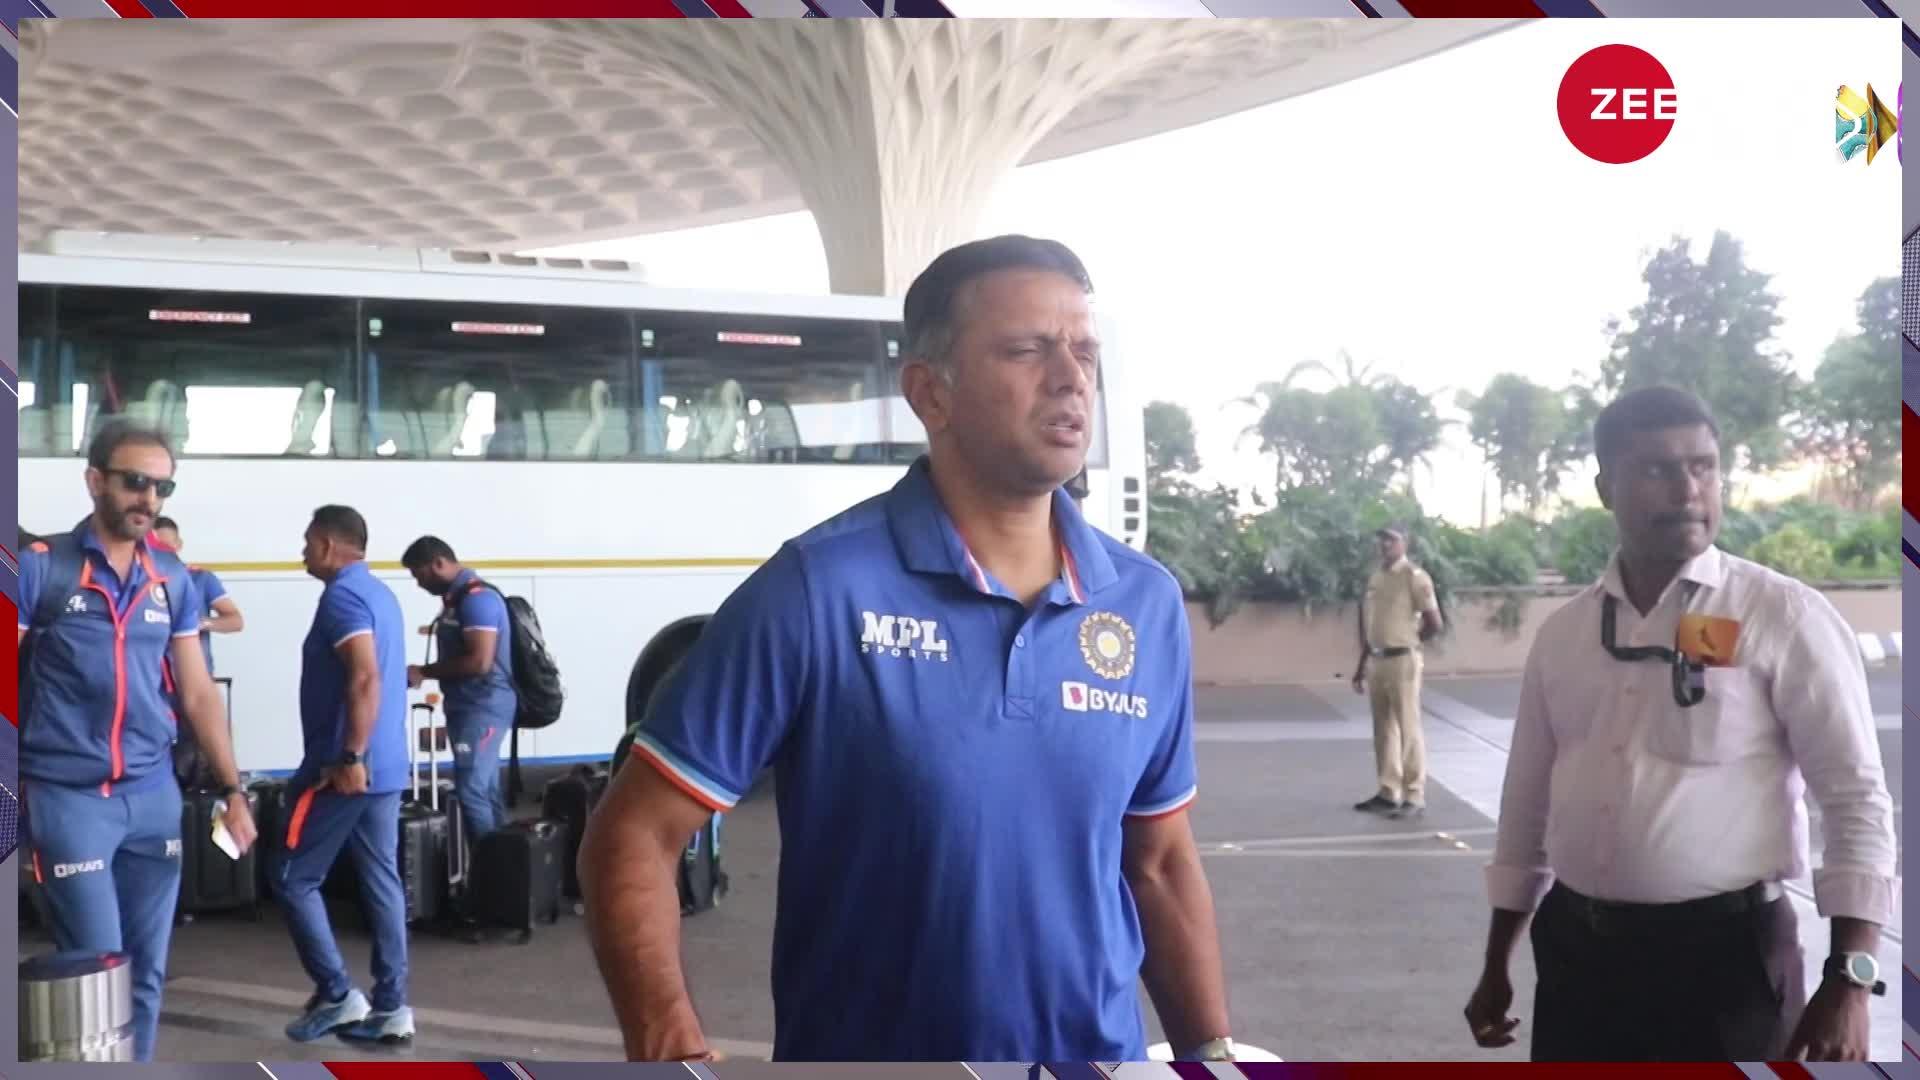 मुंबई एयरपोर्ट पर नजर आए इंडियन क्रिकेट टीम के खिलाड़ी, विराट कोहली के कूल लुक ने जीता फैंस का दिल